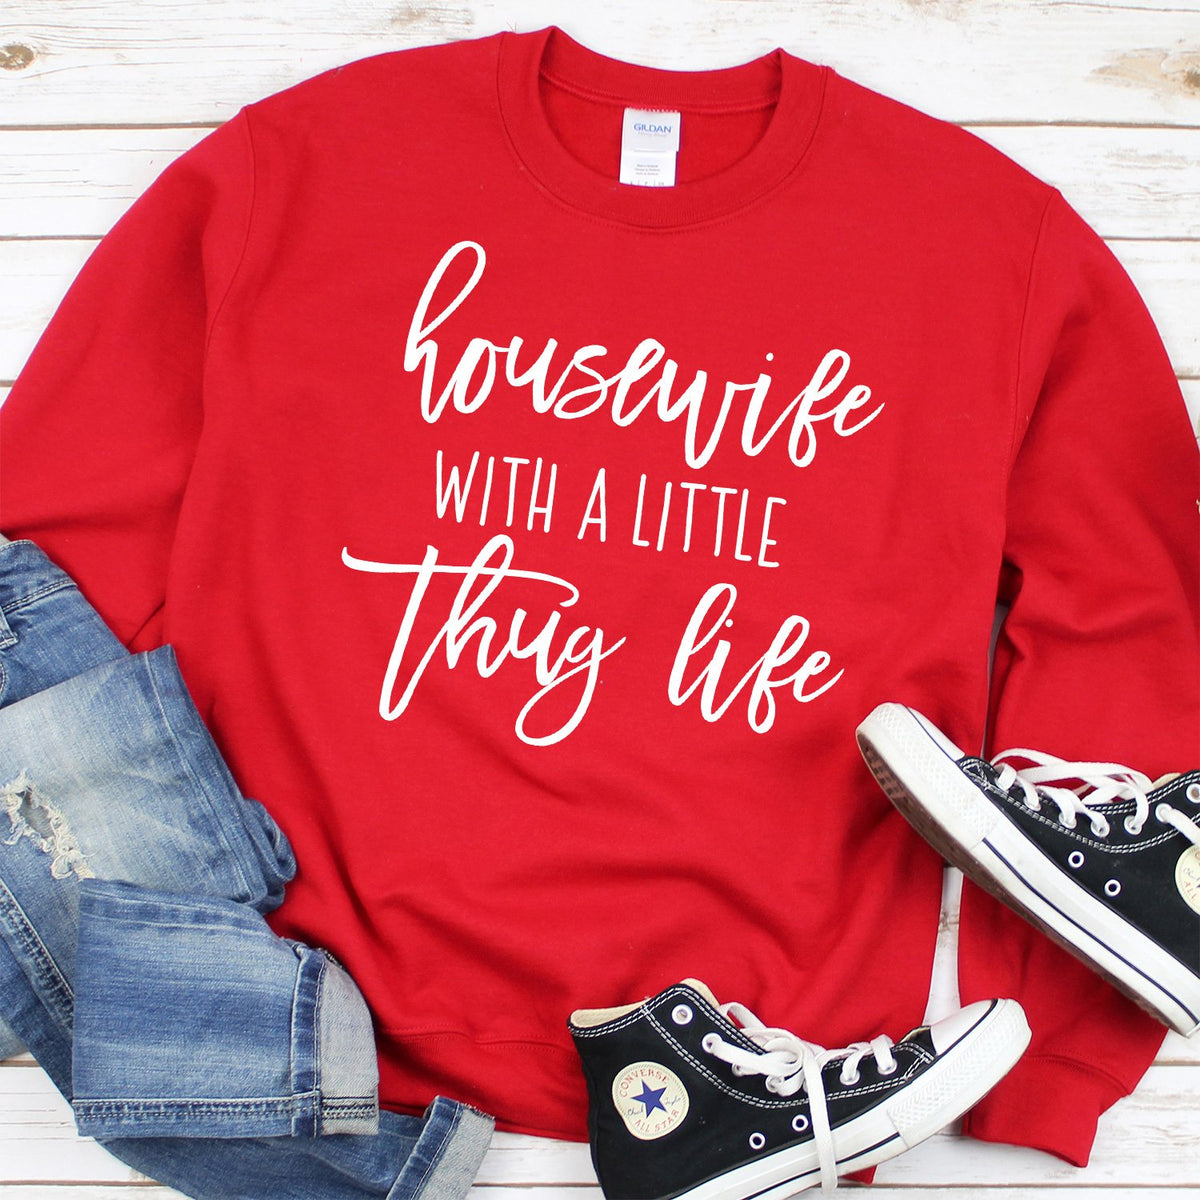 Housewife With A Little Thug Life - Long Sleeve Heavy Crewneck Sweatshirt